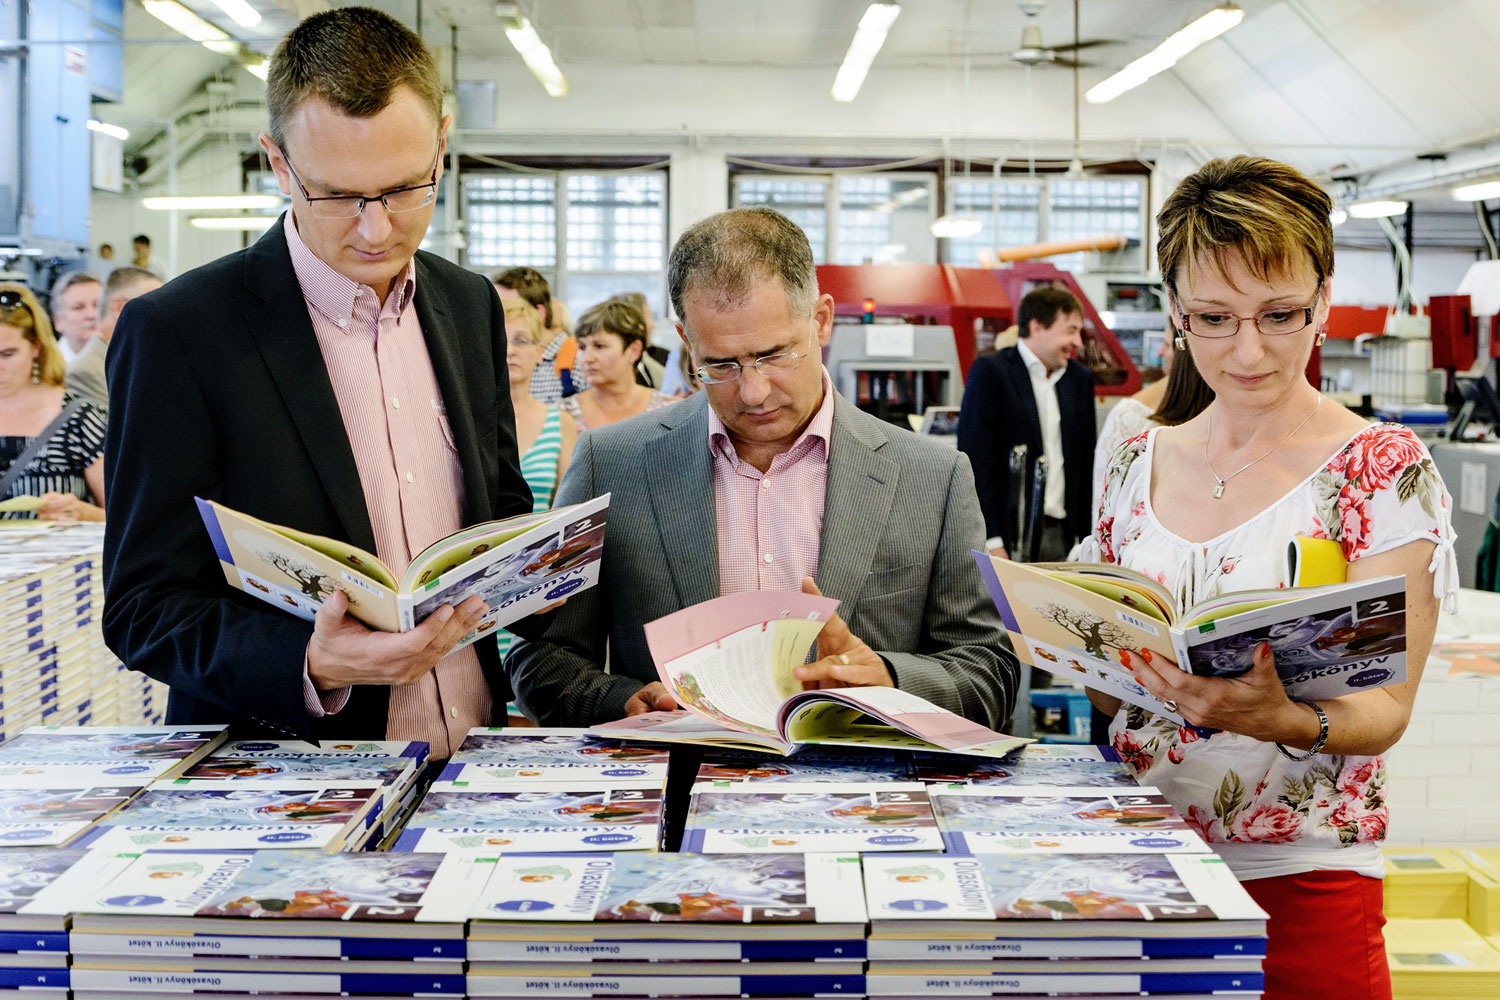 Rétvári Bence államtitkár, Kósa Lajos fideszes politikus és Czunyiné Bertalan Judit szemlélik az új tankönyveket a nyomdában